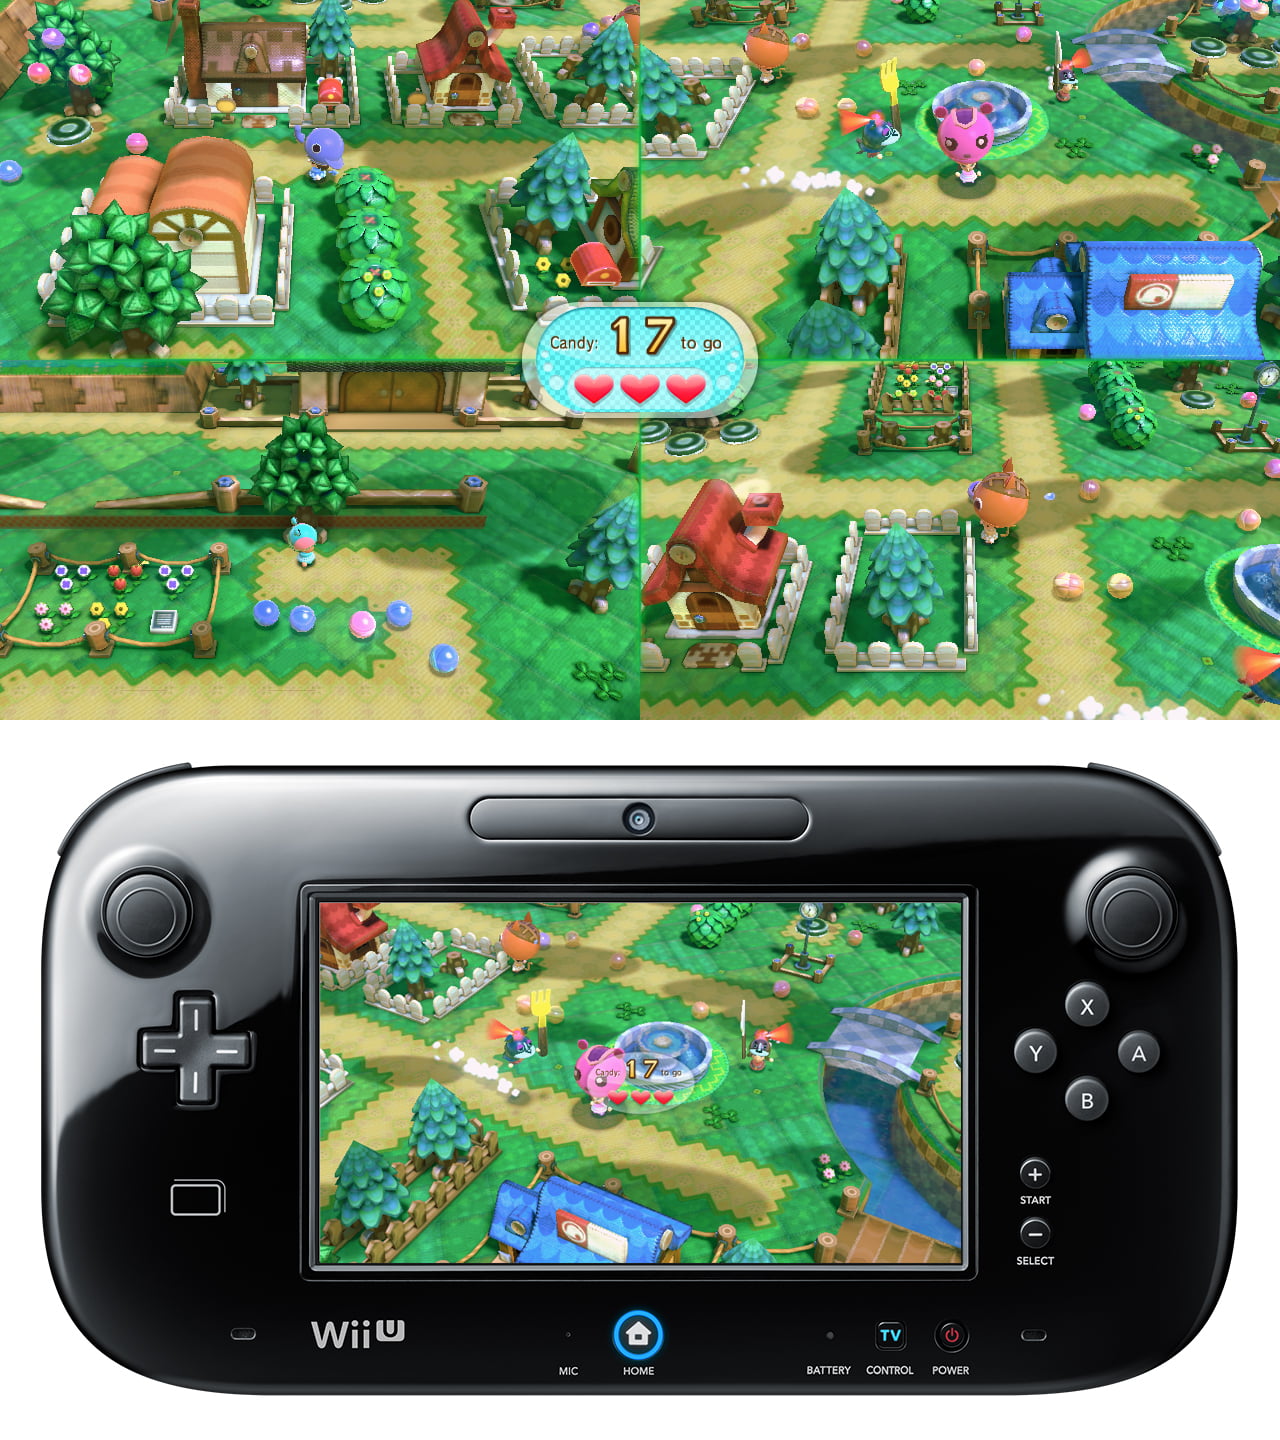 Nintendo Land (Nintendo Selects) - Nintendo Wii-U - Macy's